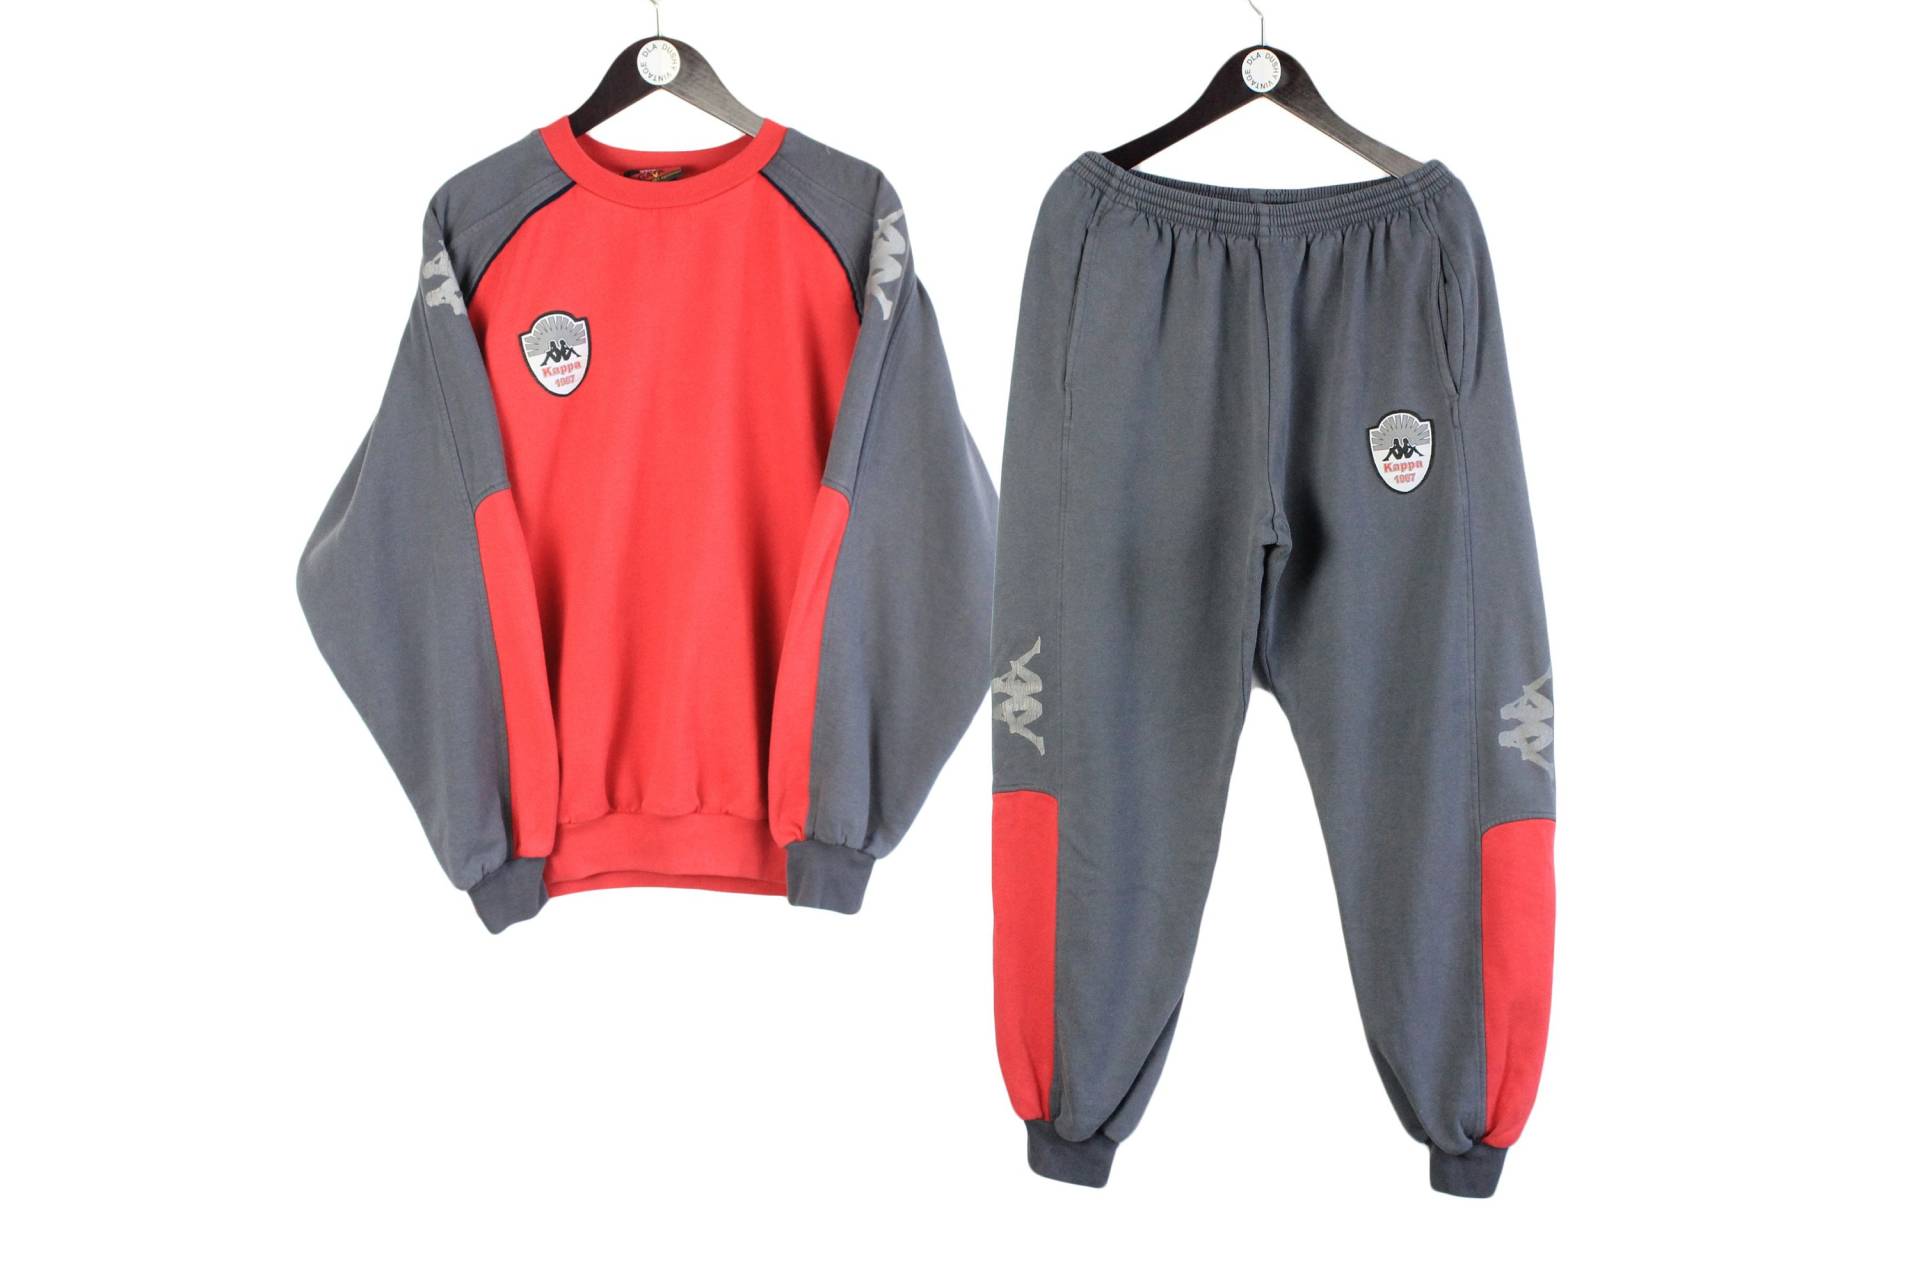 Vintage Kappa Trainingsanzug Größe M Retro Sport Italien Stil Sportliche Kleidung Rave 90Er Jahre Herren Rot Grau Großes Logo Sweatshirt Und von dDushy